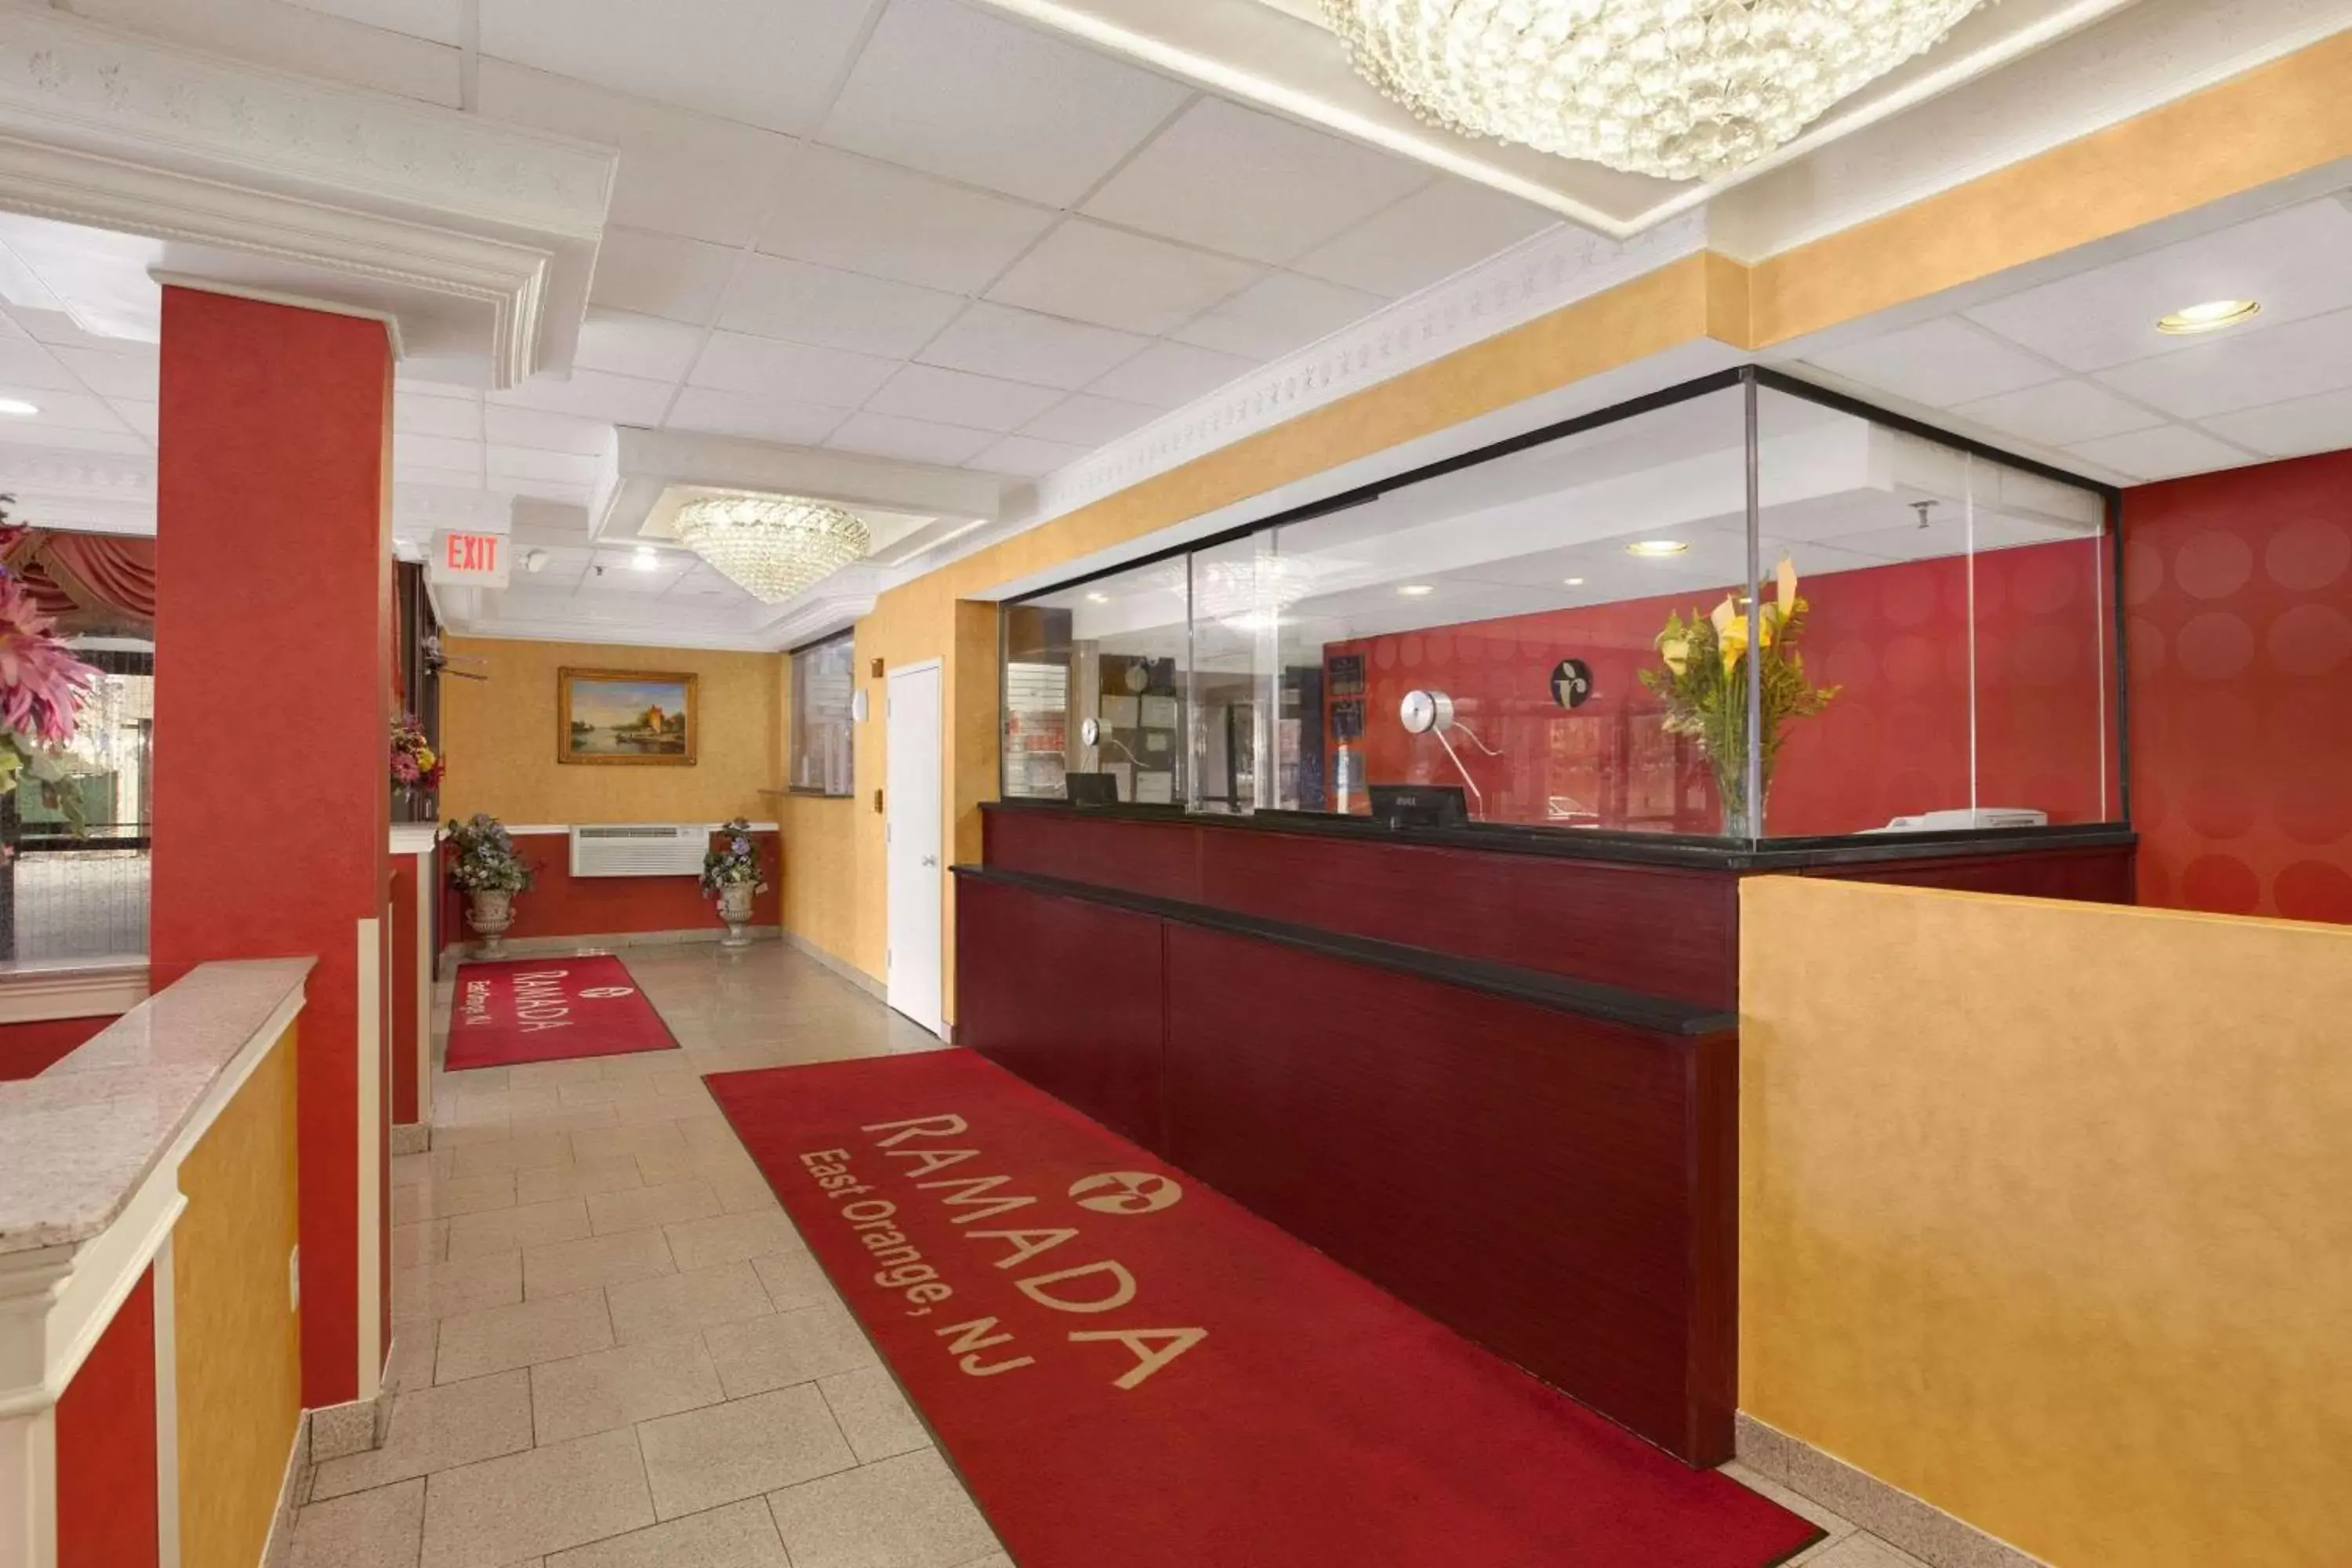 Lobby or reception, Lobby/Reception in Ramada by Wyndham East Orange